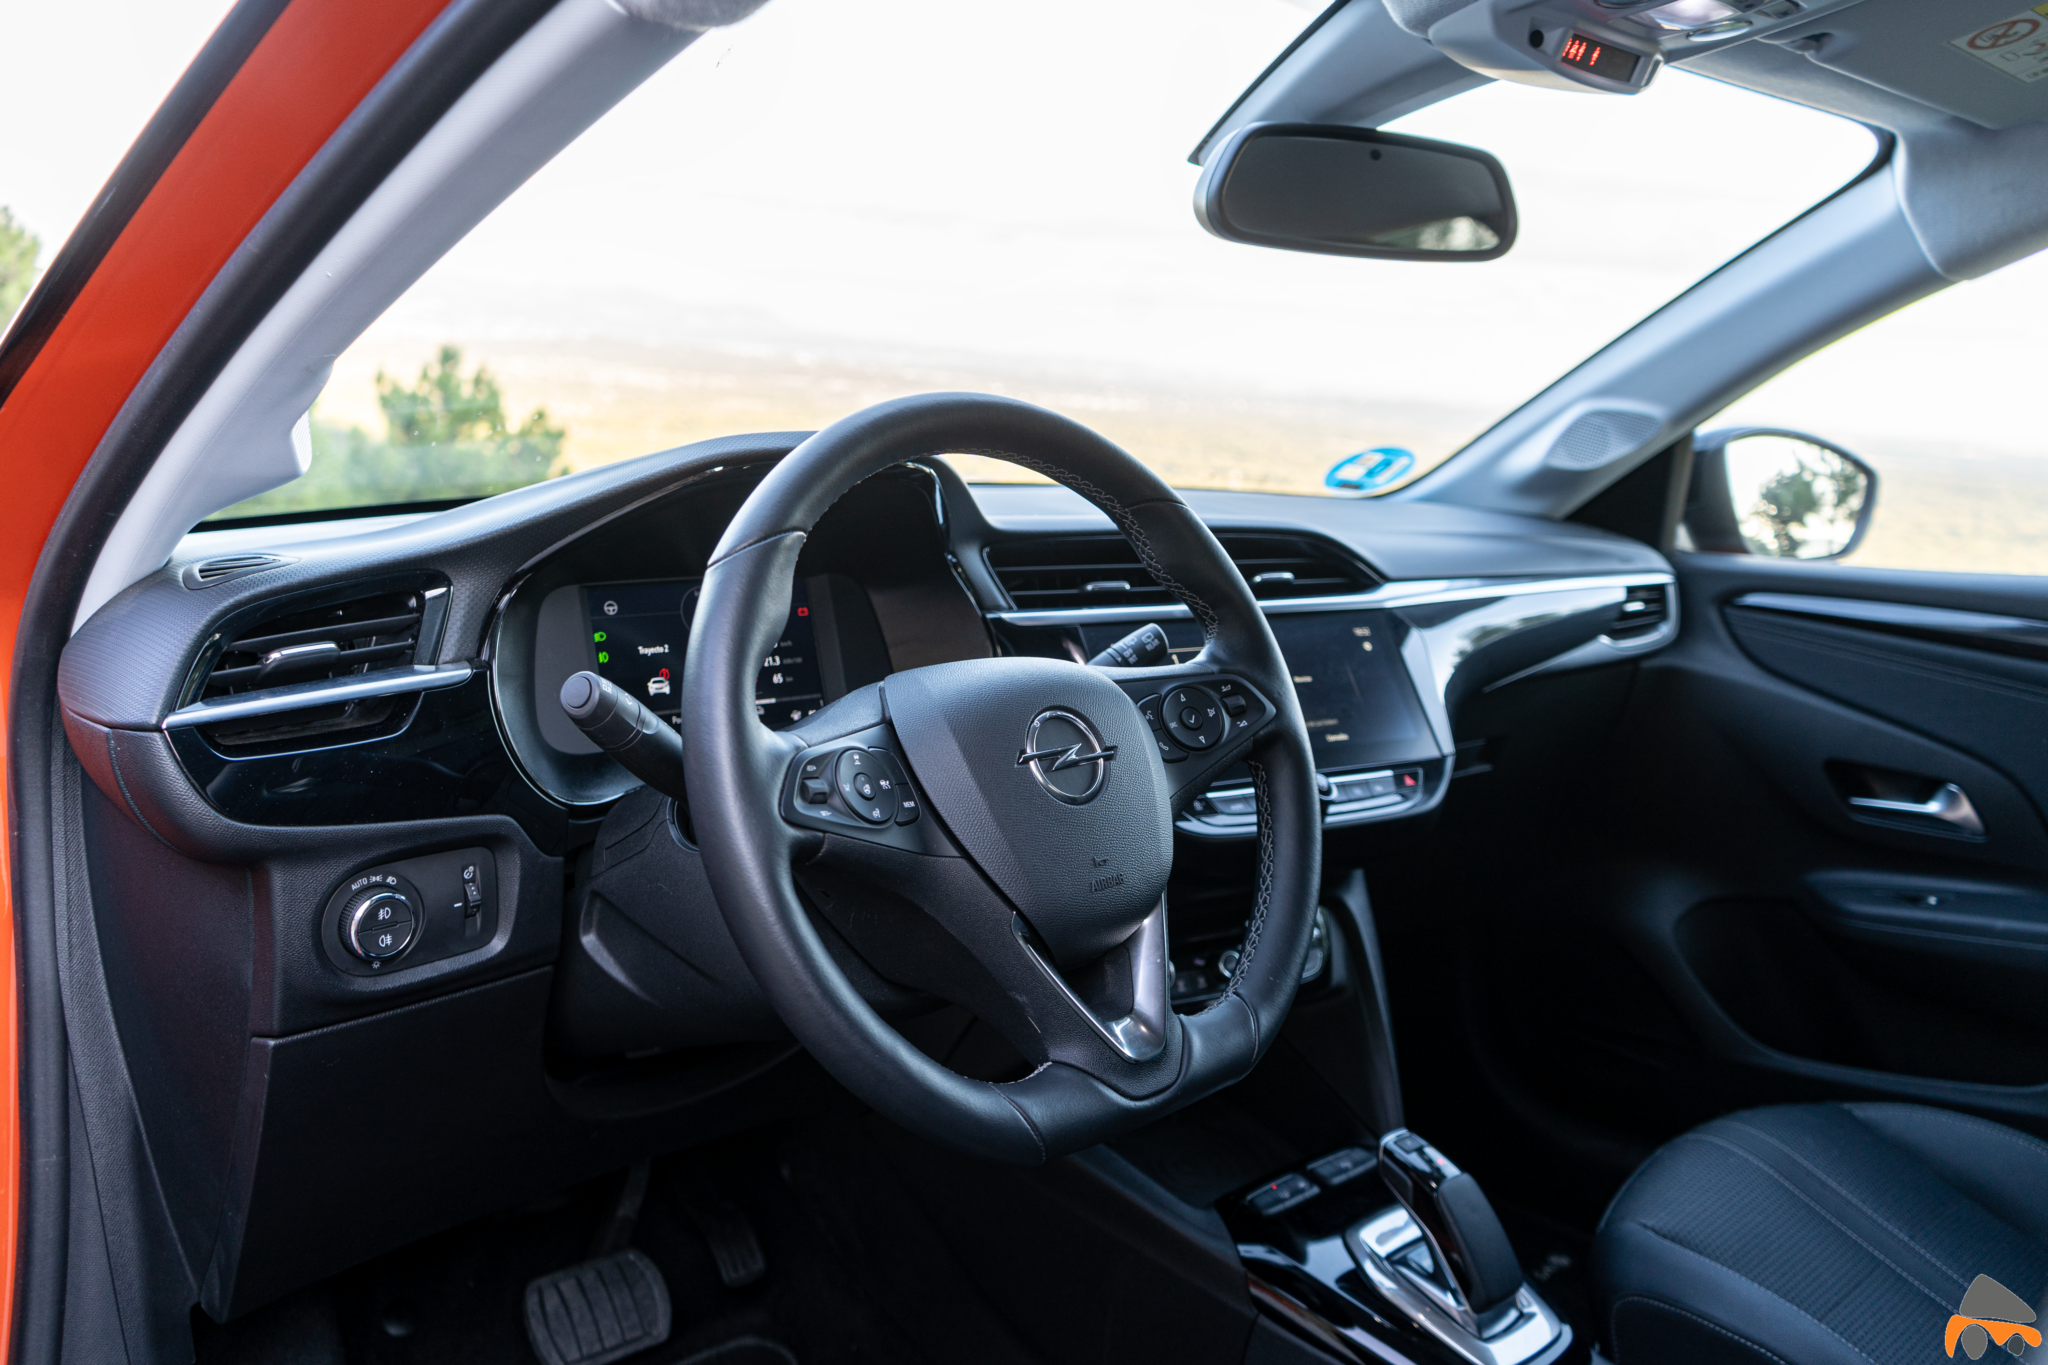 Salpicadero vista delantera izquierda Opel Corsa e - Prueba Opel Corsa-e 2020: El primer coche eléctrico de Opel tiene 136 CV y 280 km reales de autonomía